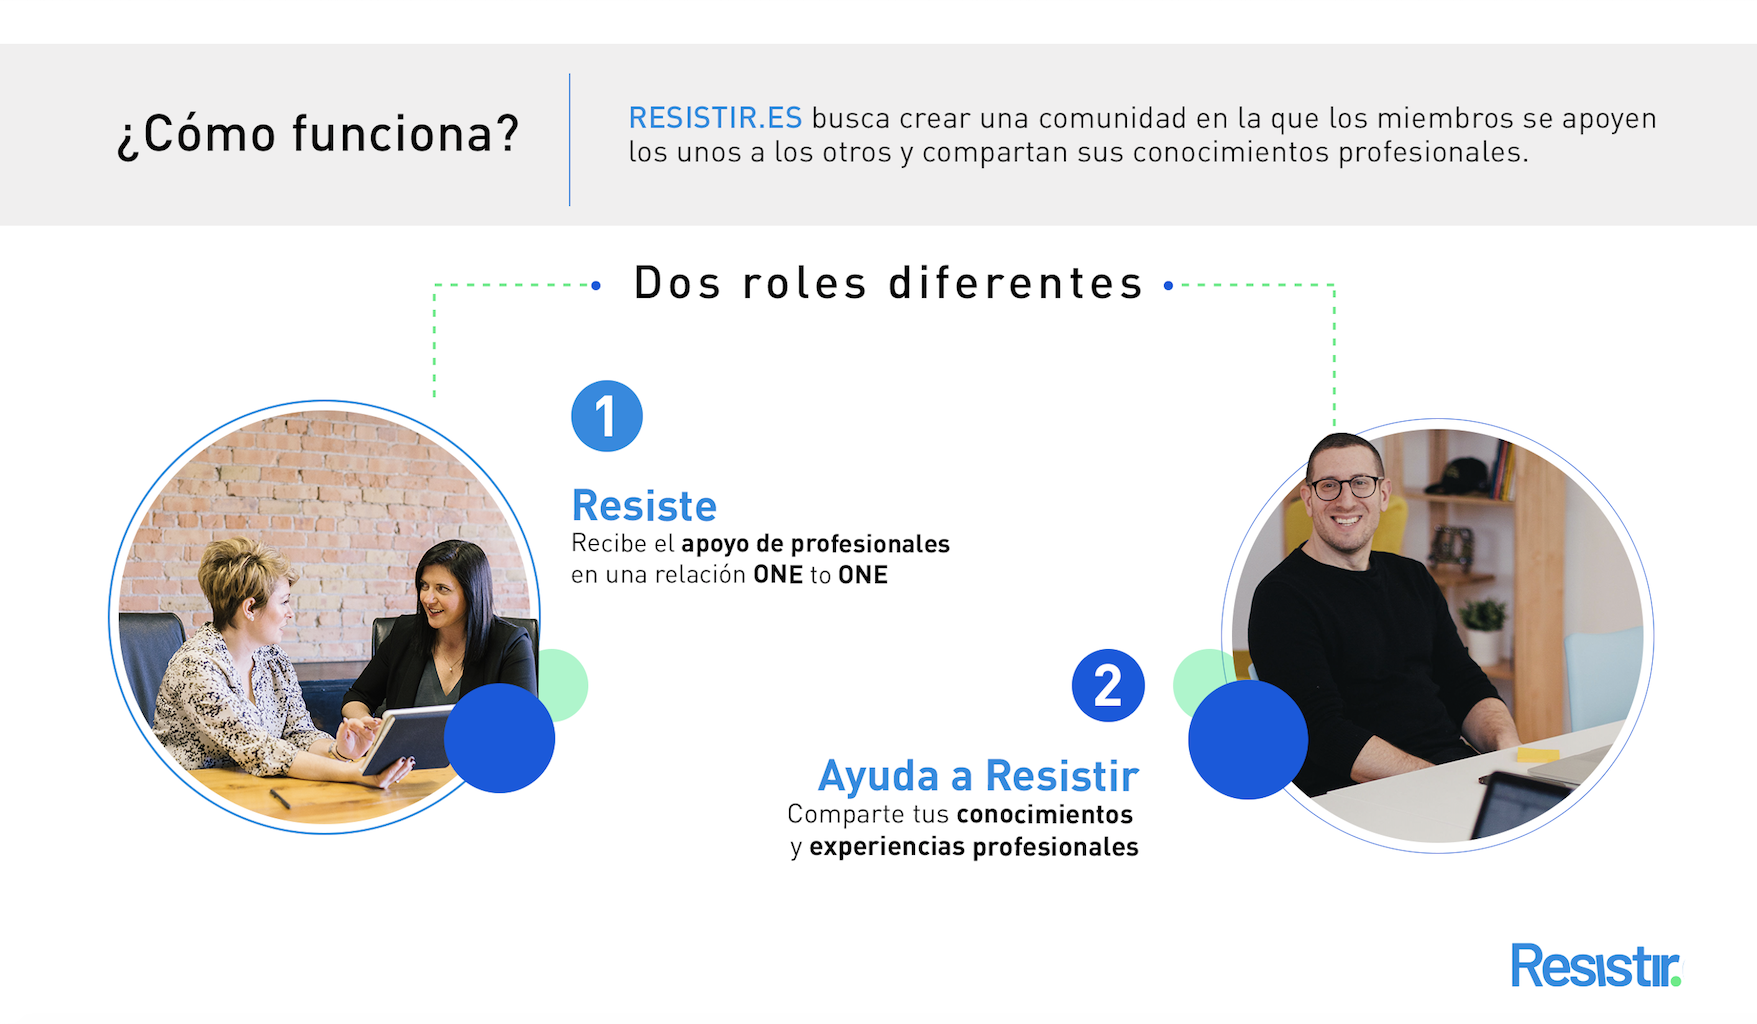 Nace la plataforma de ayuda digital para profesionales RESISTIR.ES, impulsada por ROI UP Group